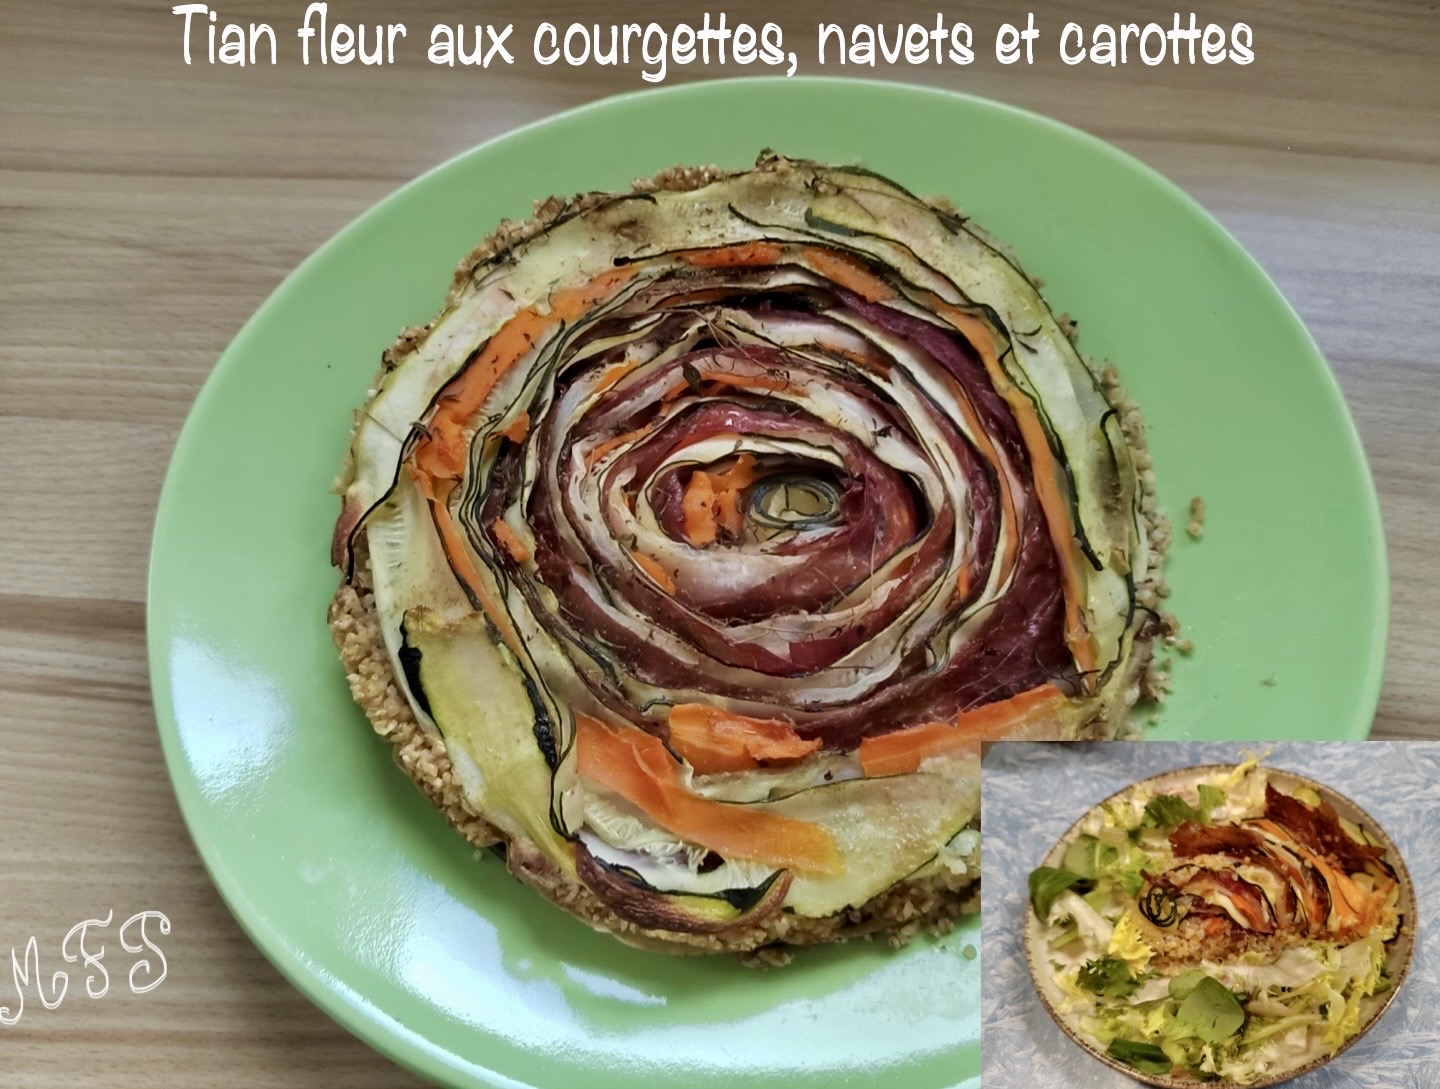 Tian fleur aux courgettes, navets et carottes